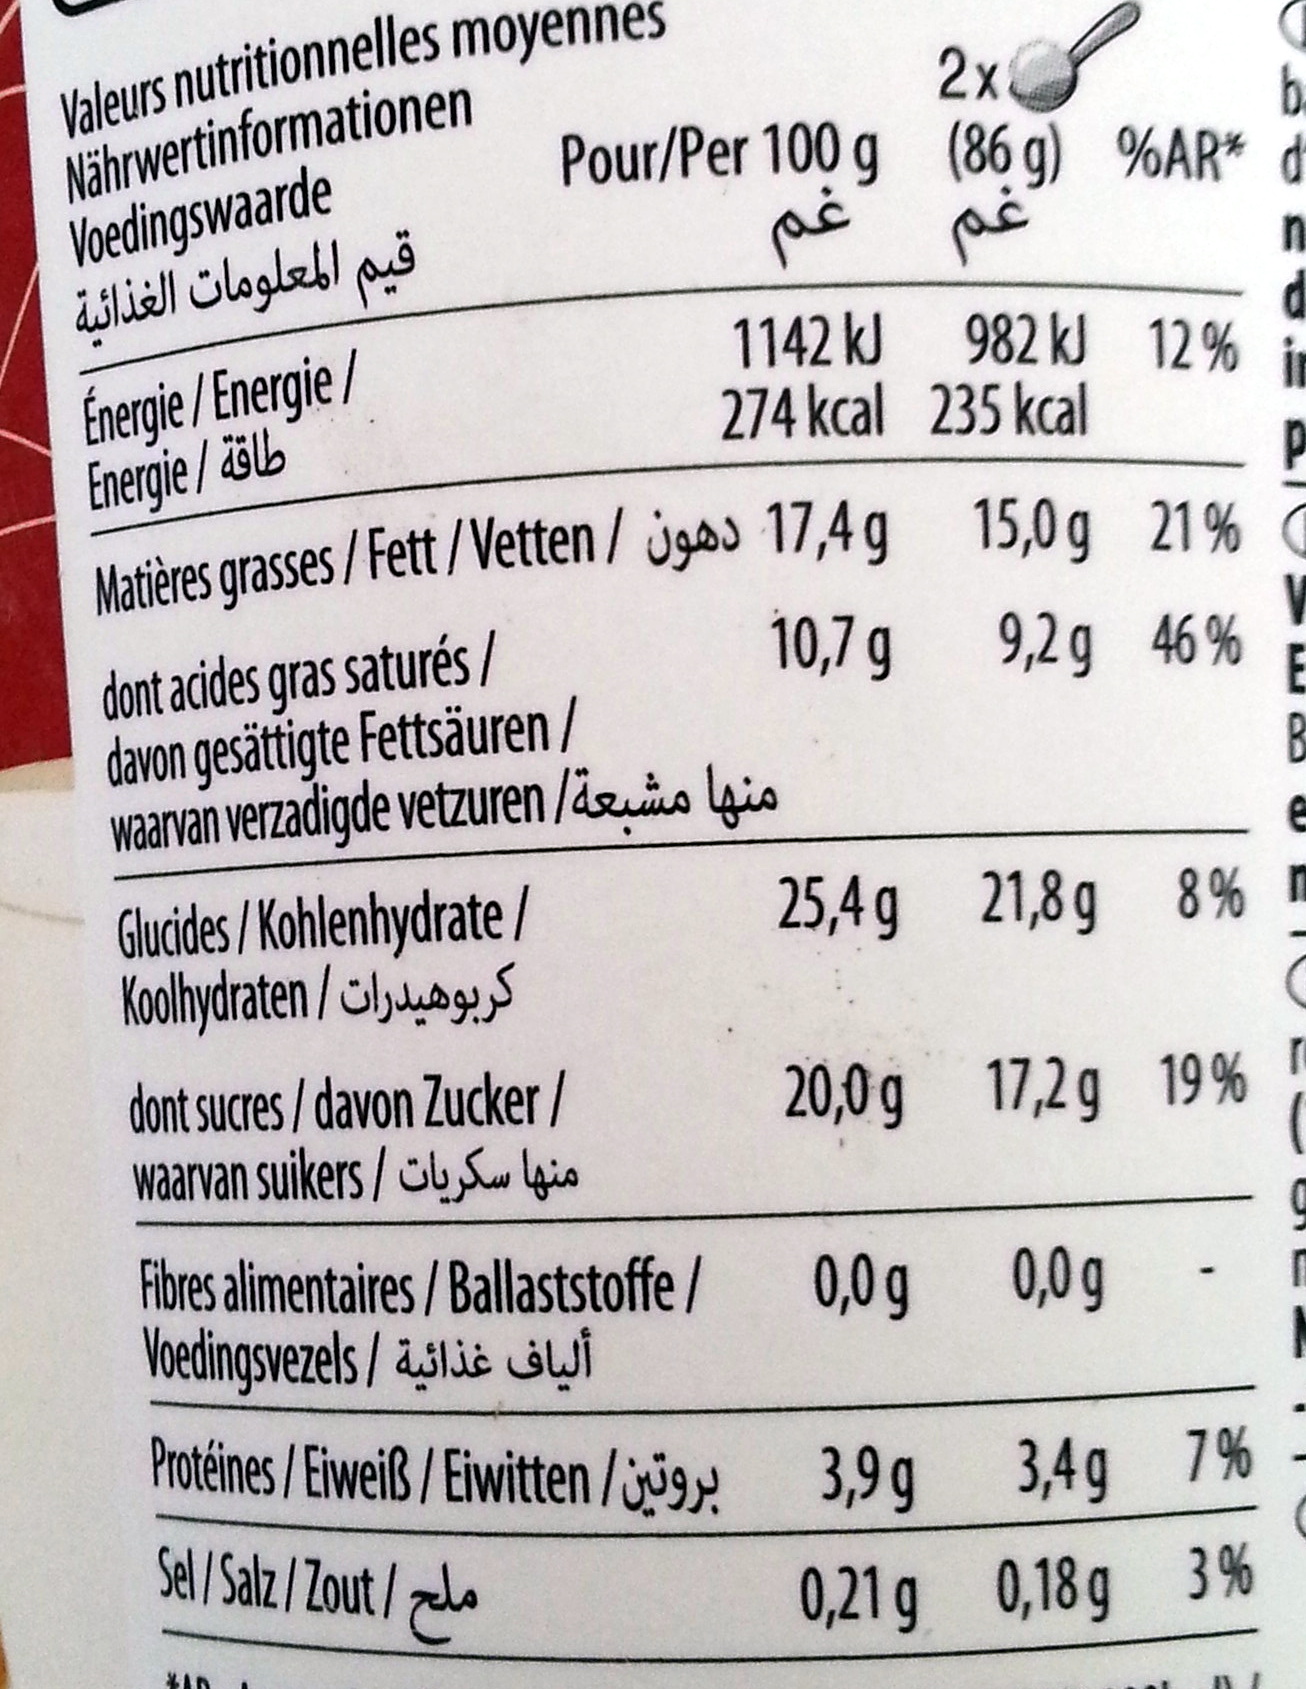 Macadamia nut brittle - Näringsfakta - fr